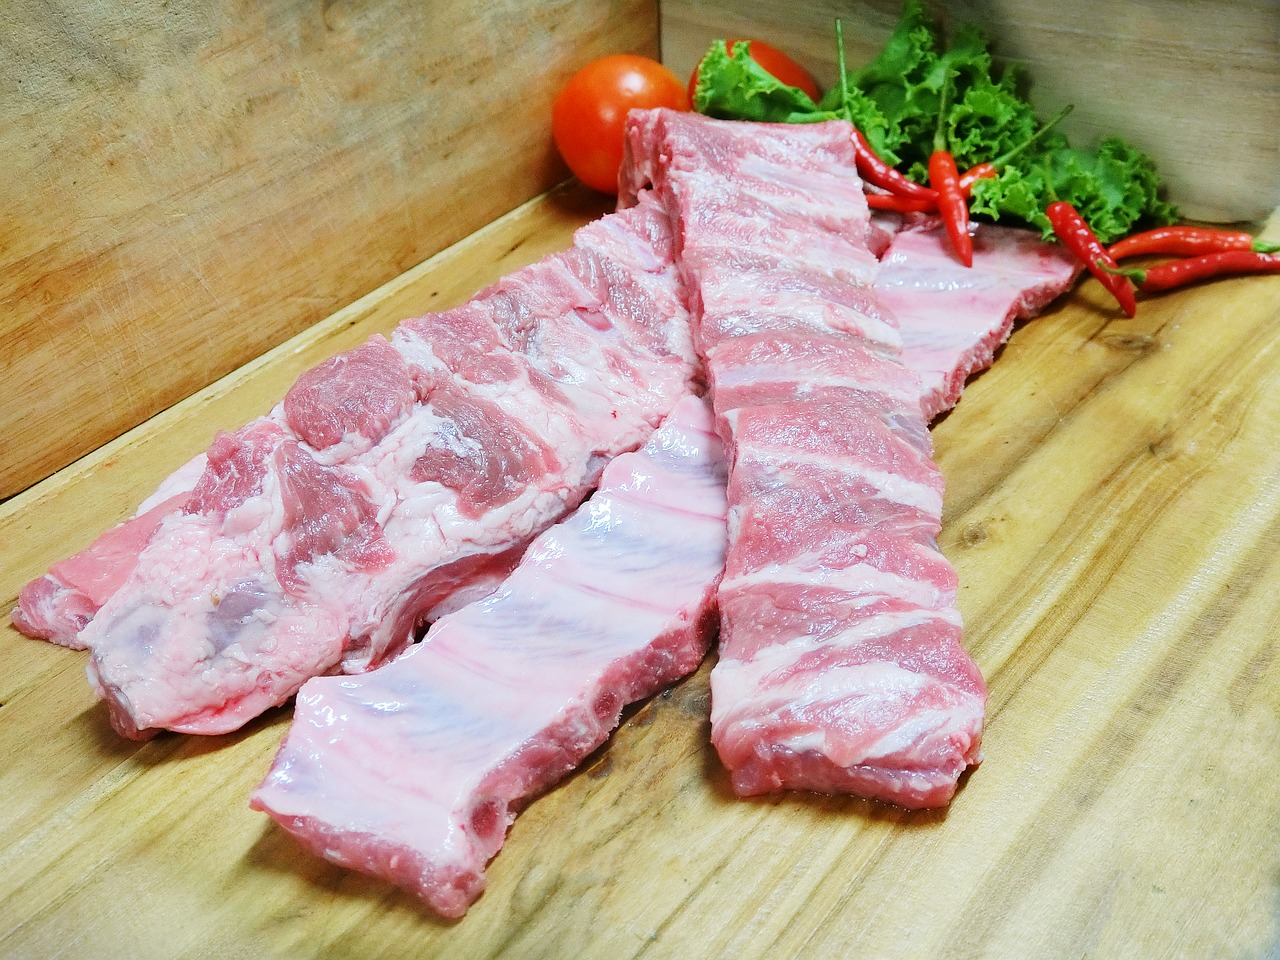 Chili Pork Steak